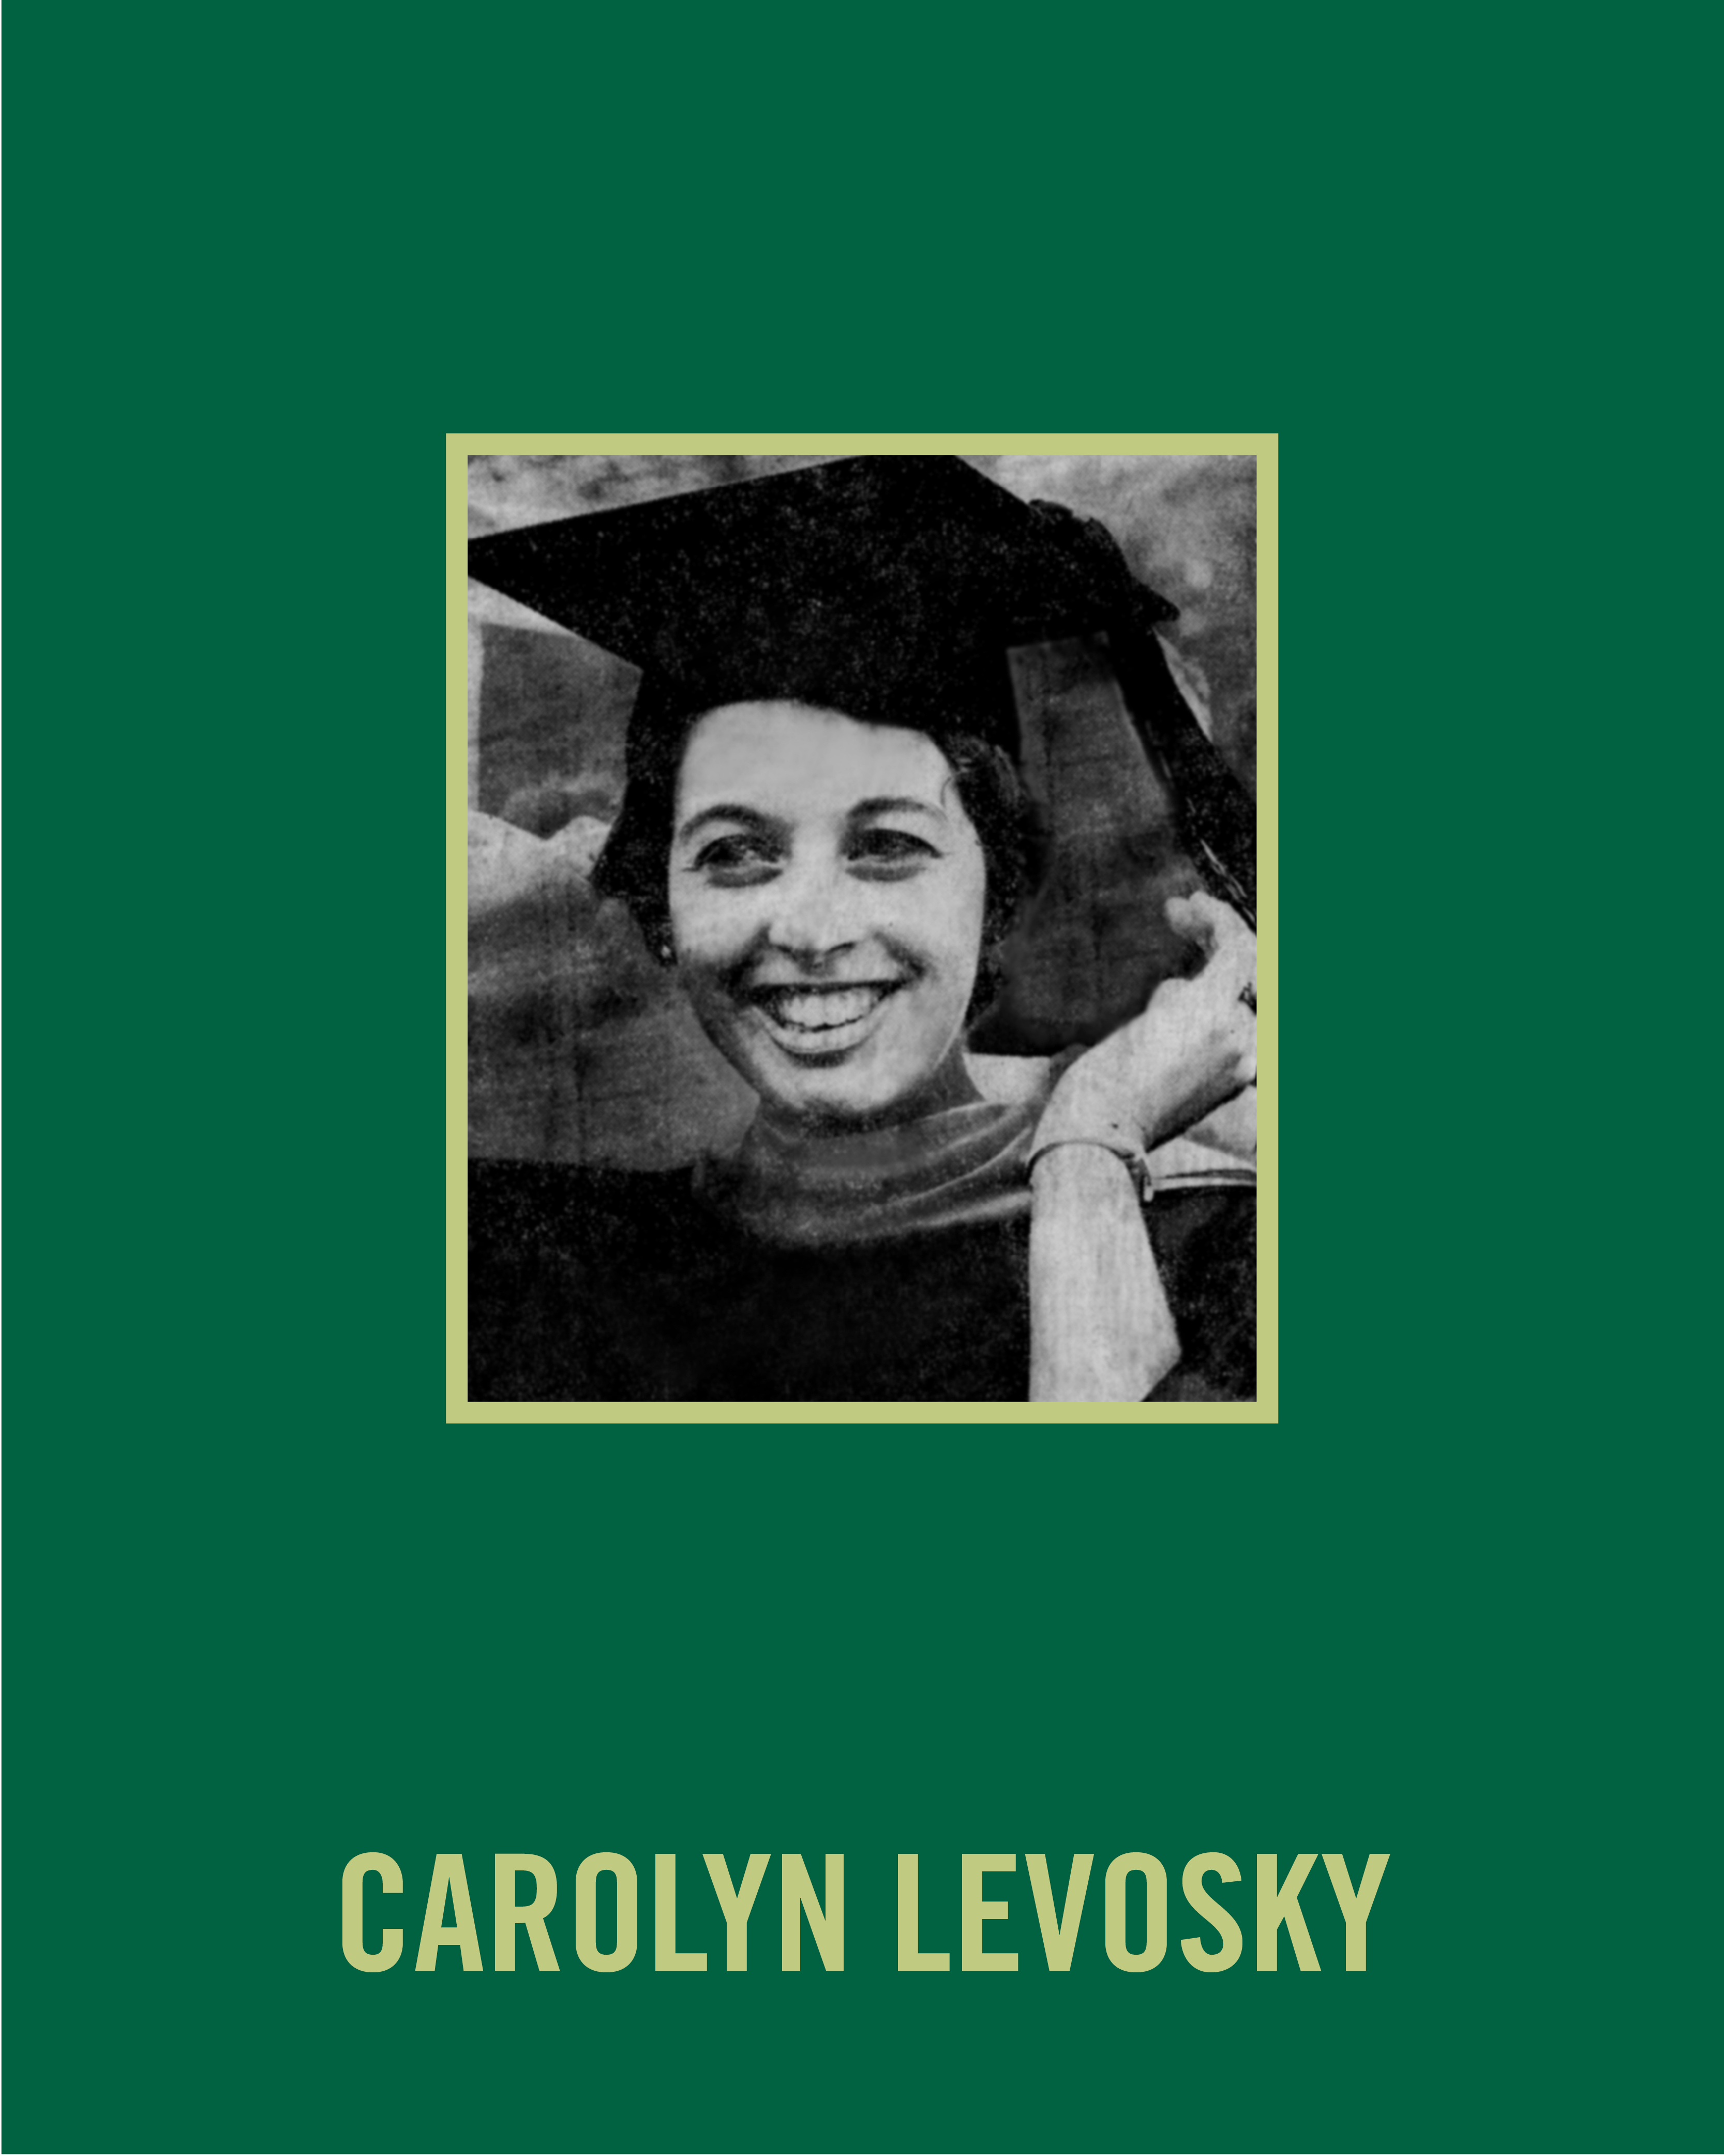 Carolyn Levosky